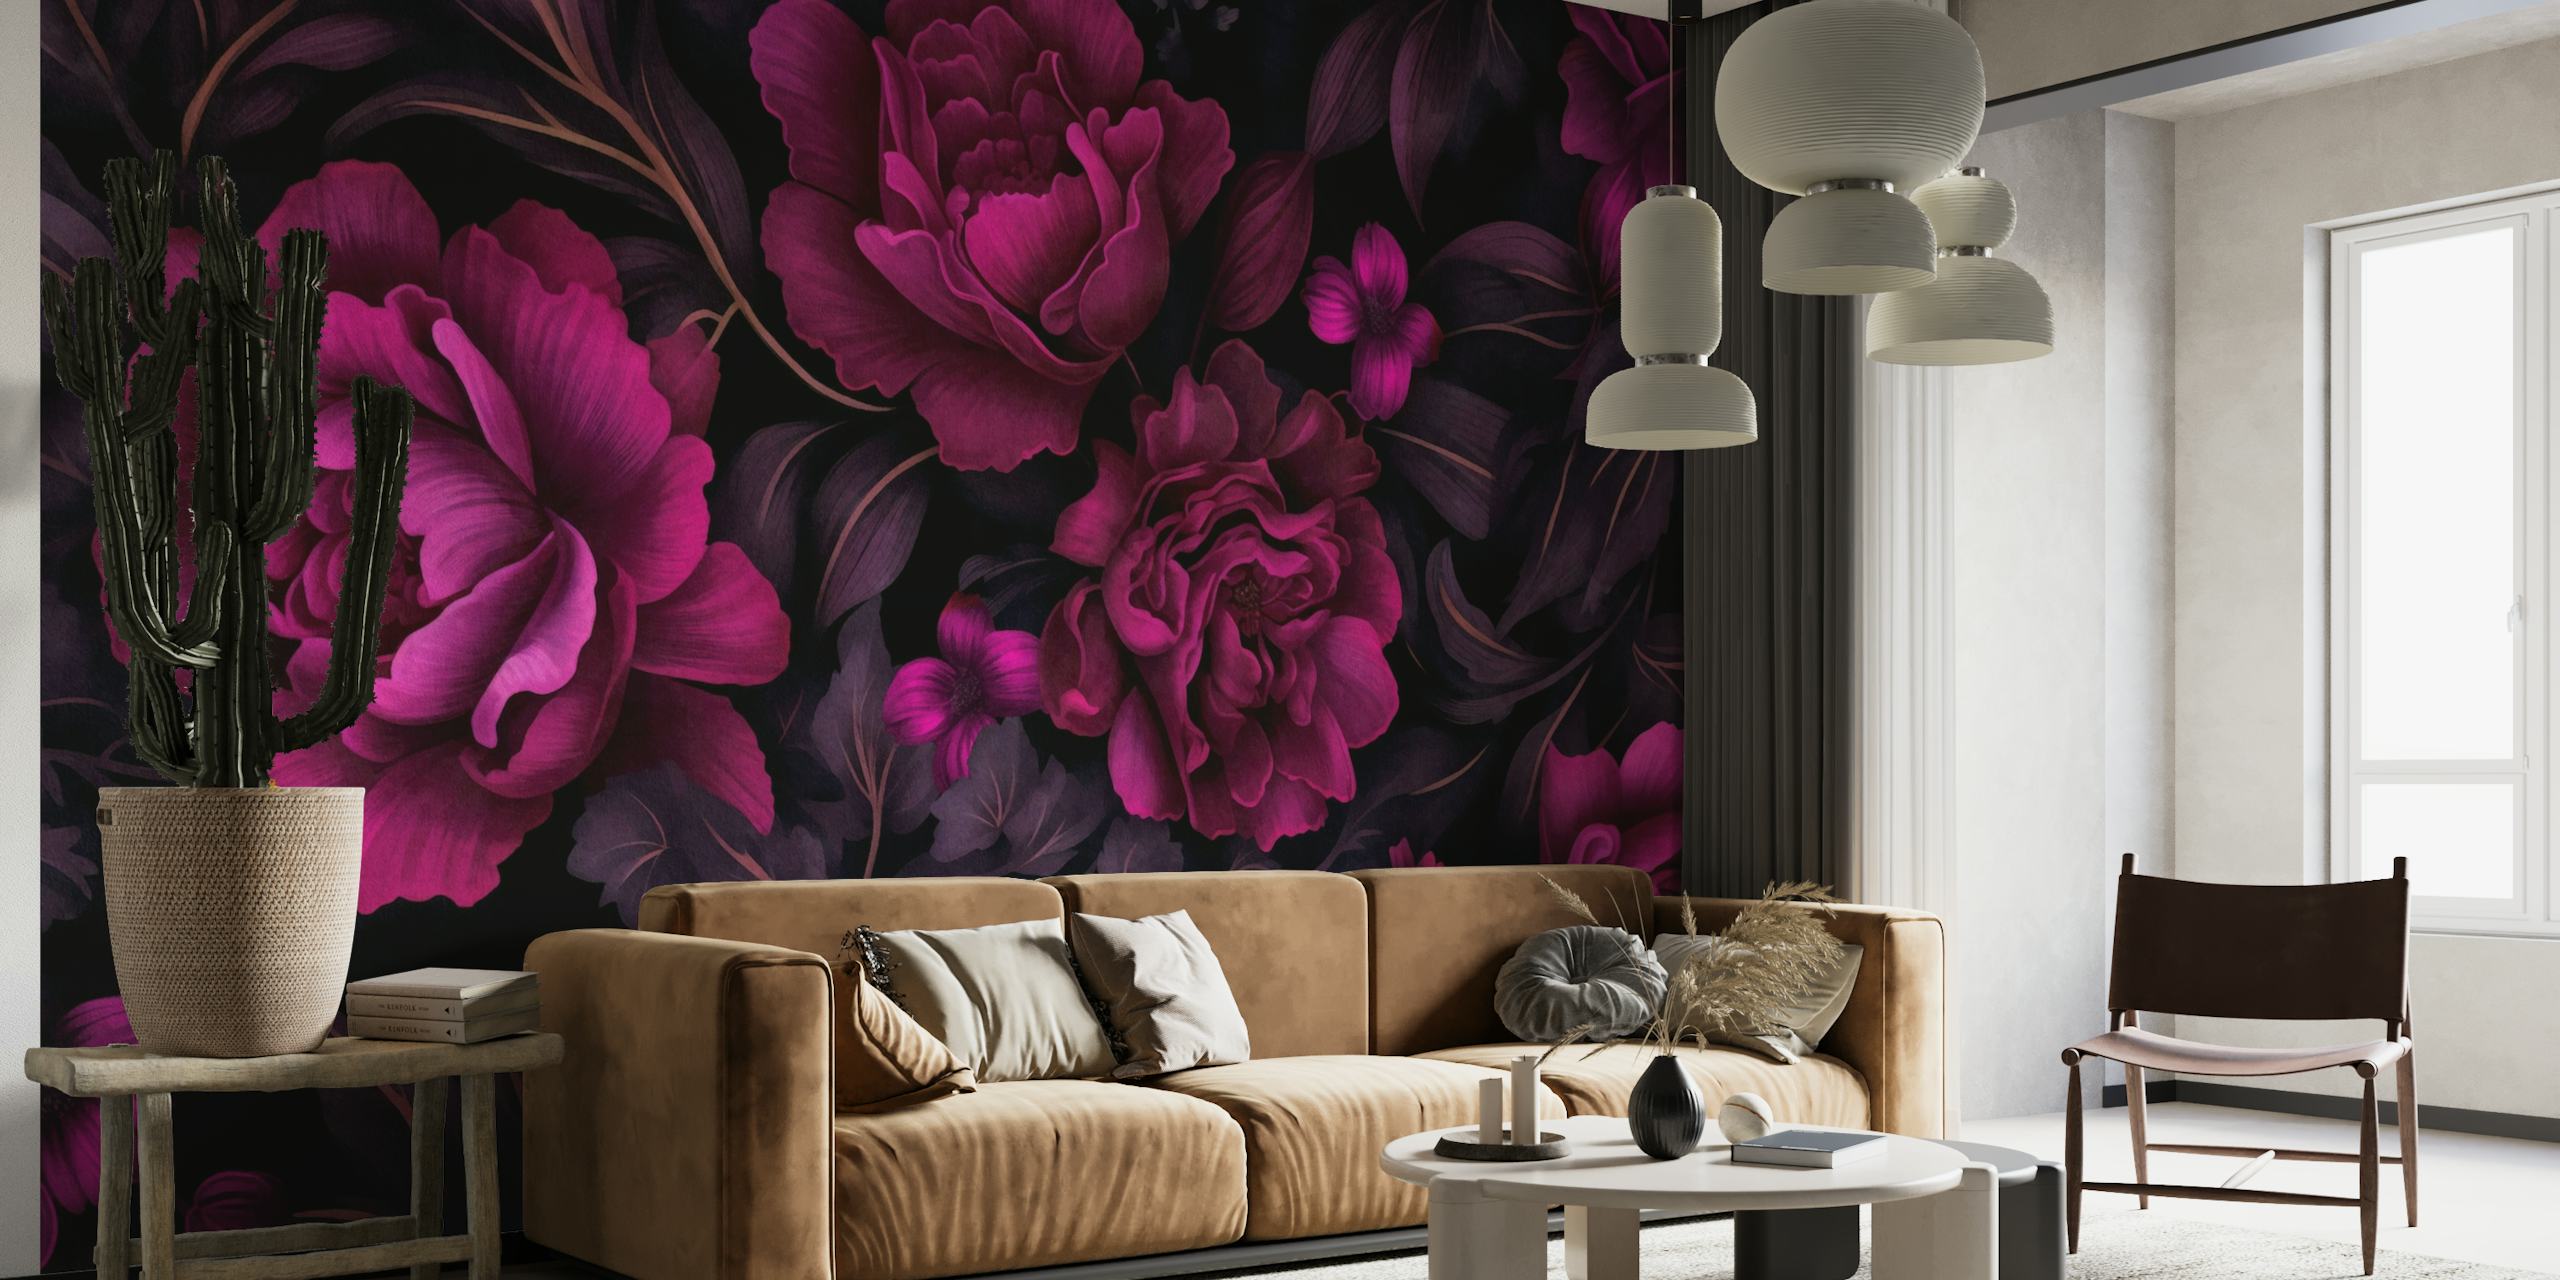 Fuchsia-rosa Blumen auf einem dunklen, stimmungsvollen Hintergrund